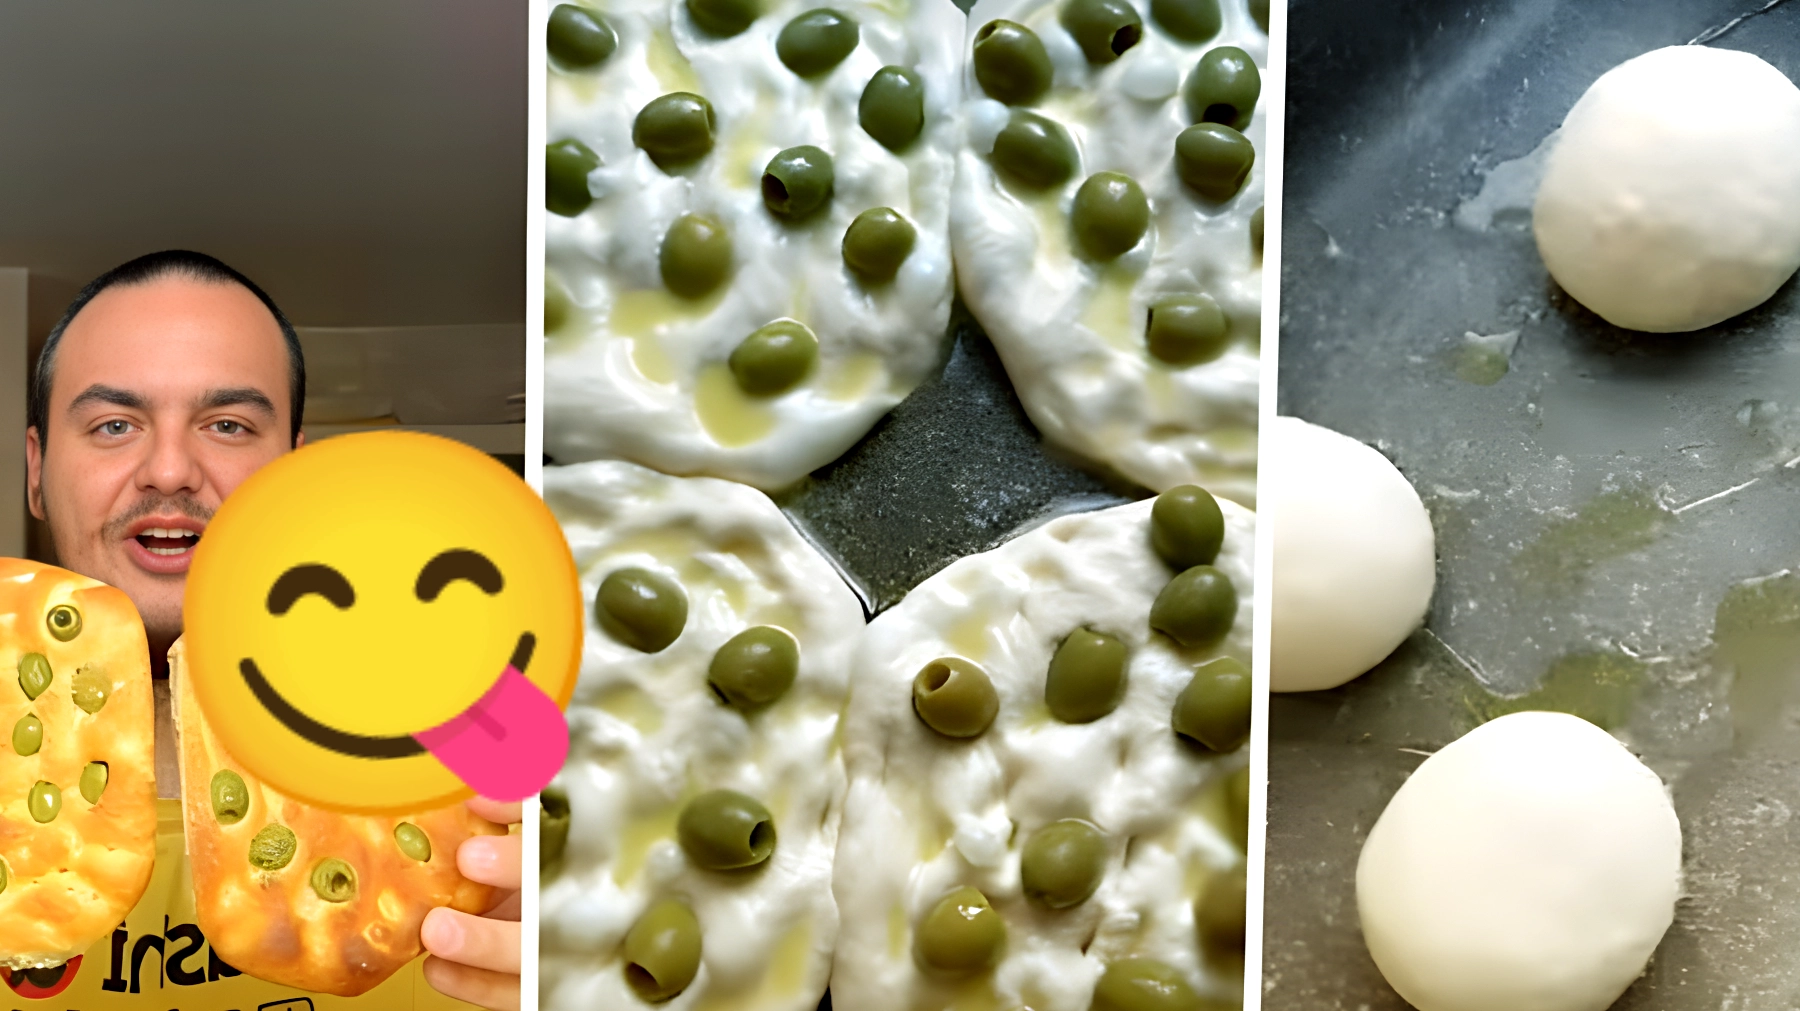 Focaccine con le olive, il segreto per prepararle a casa in 3 ore senza impastatrice! Non crederai quanto sono deliziose!